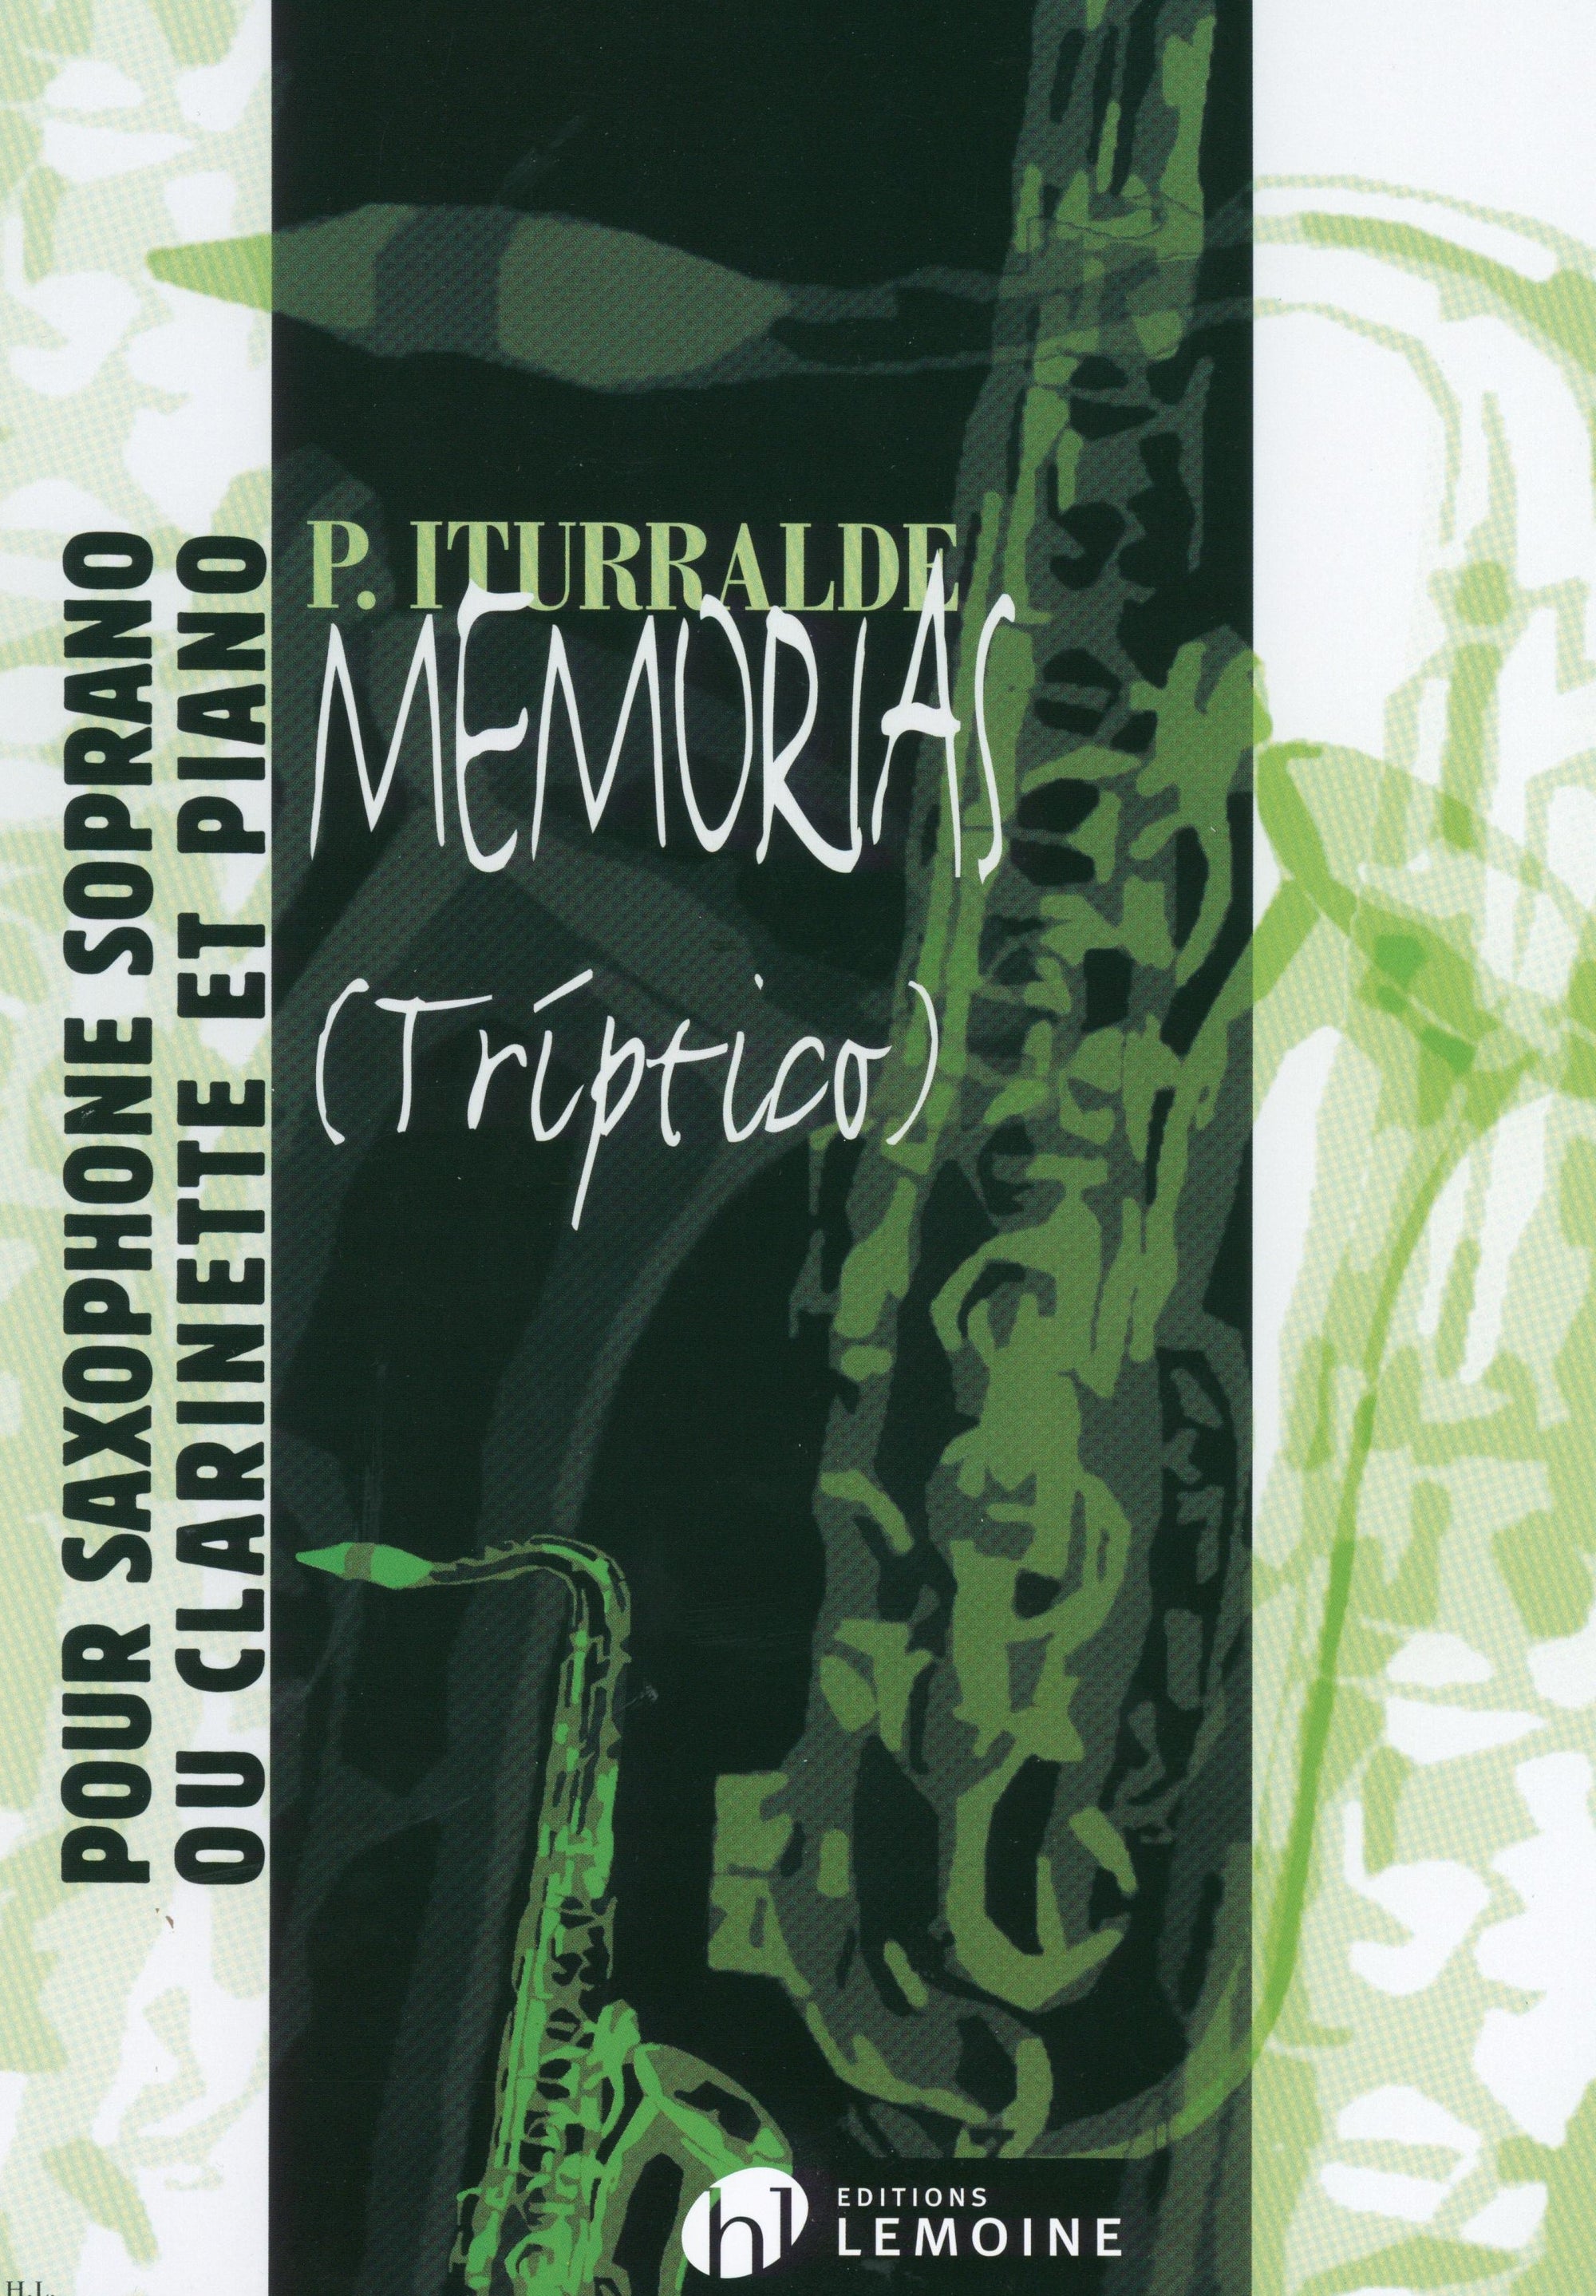 Iturralde: Memorias (Triptico)